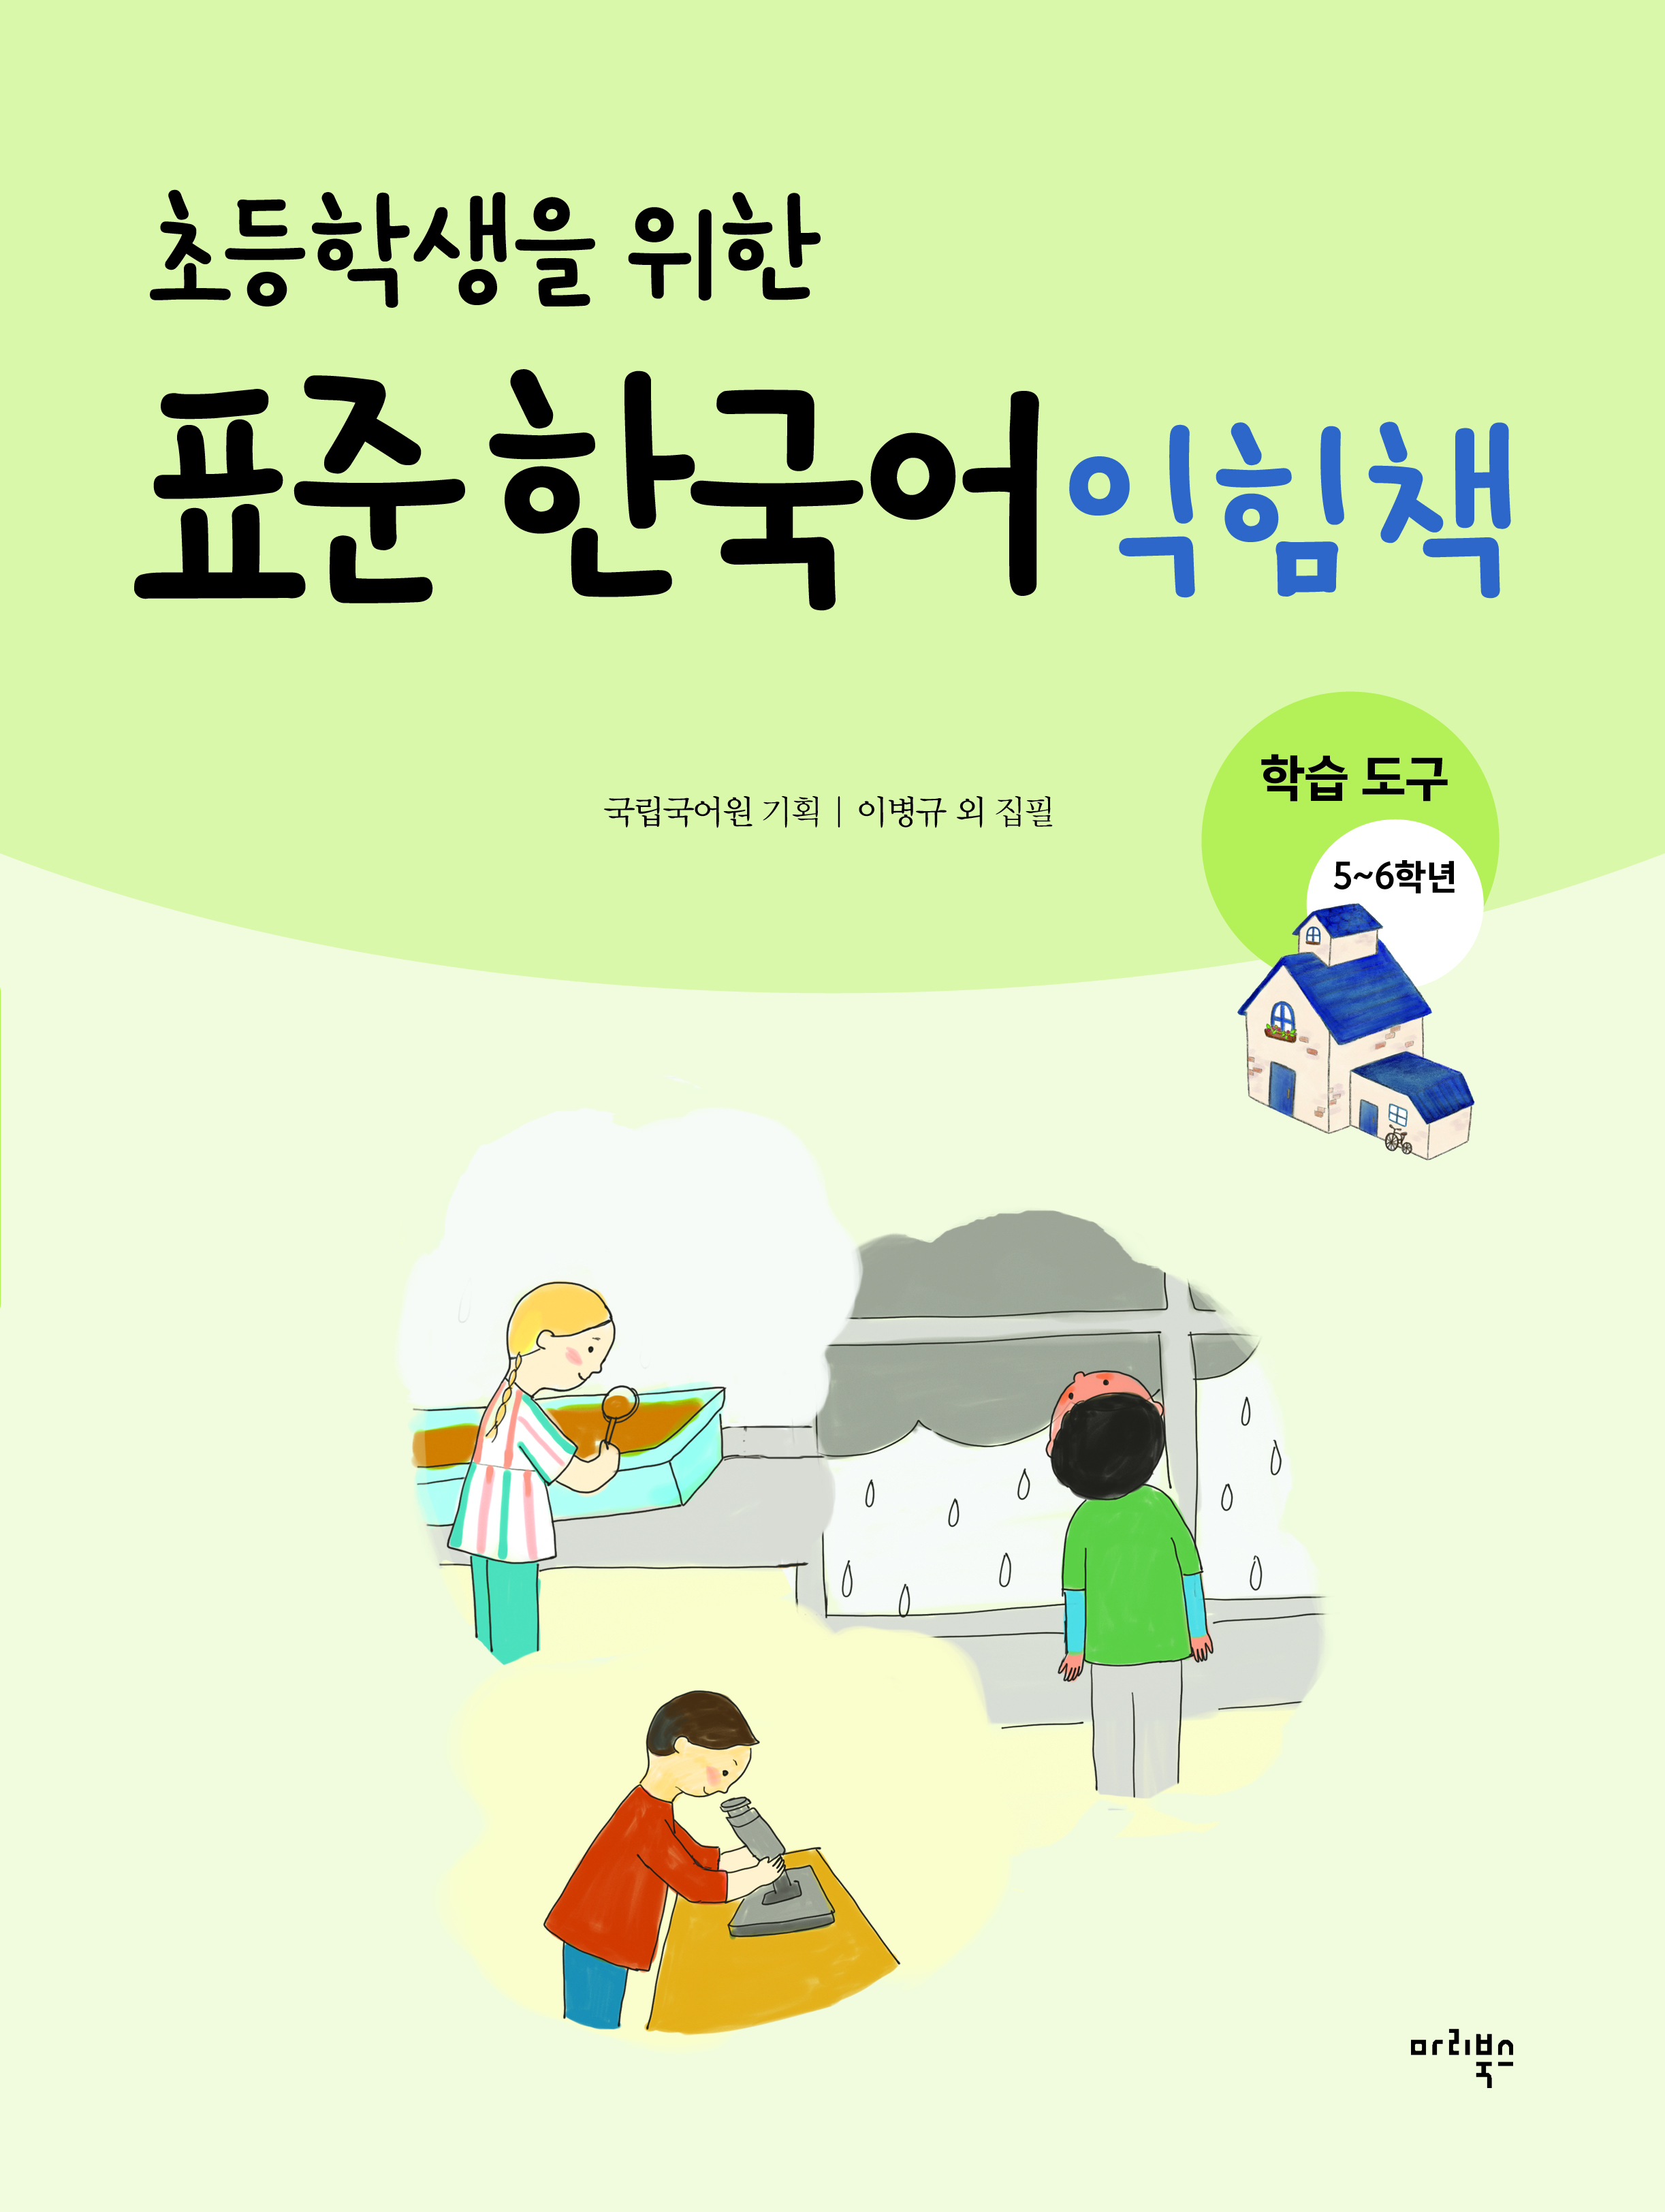 초등학생을 위한 표준 한국어 익힘책 학습 도구 5~6학년용